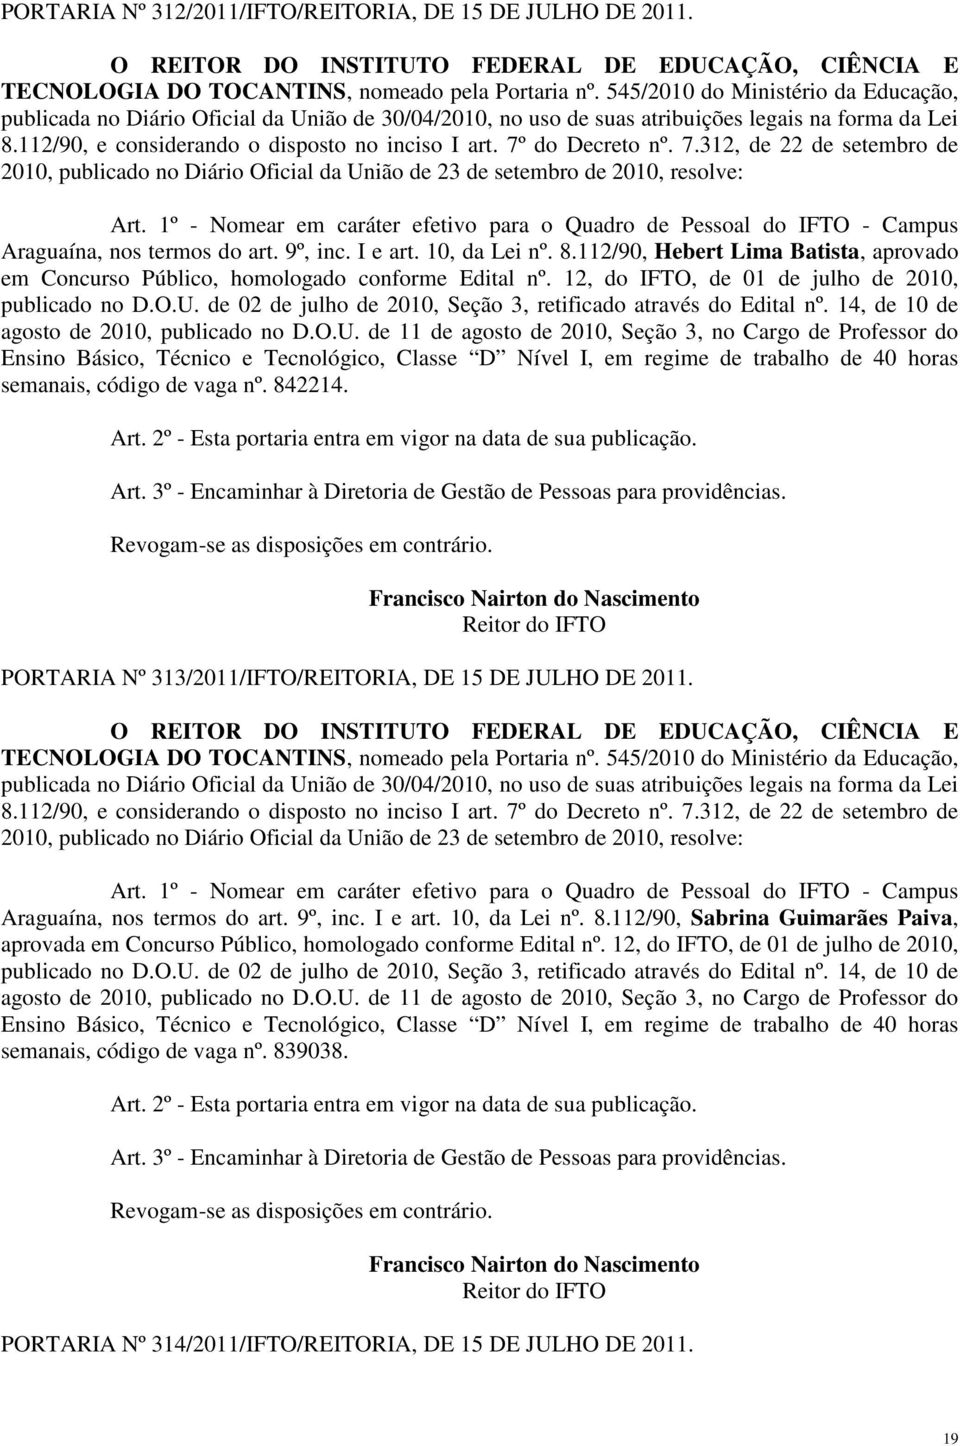 1º - Nomear em caráter efetivo para o Quadro de Pessoal do IFTO - Campus Araguaína, nos termos do art. 9º, inc. I e art. 10, da Lei nº. 8.